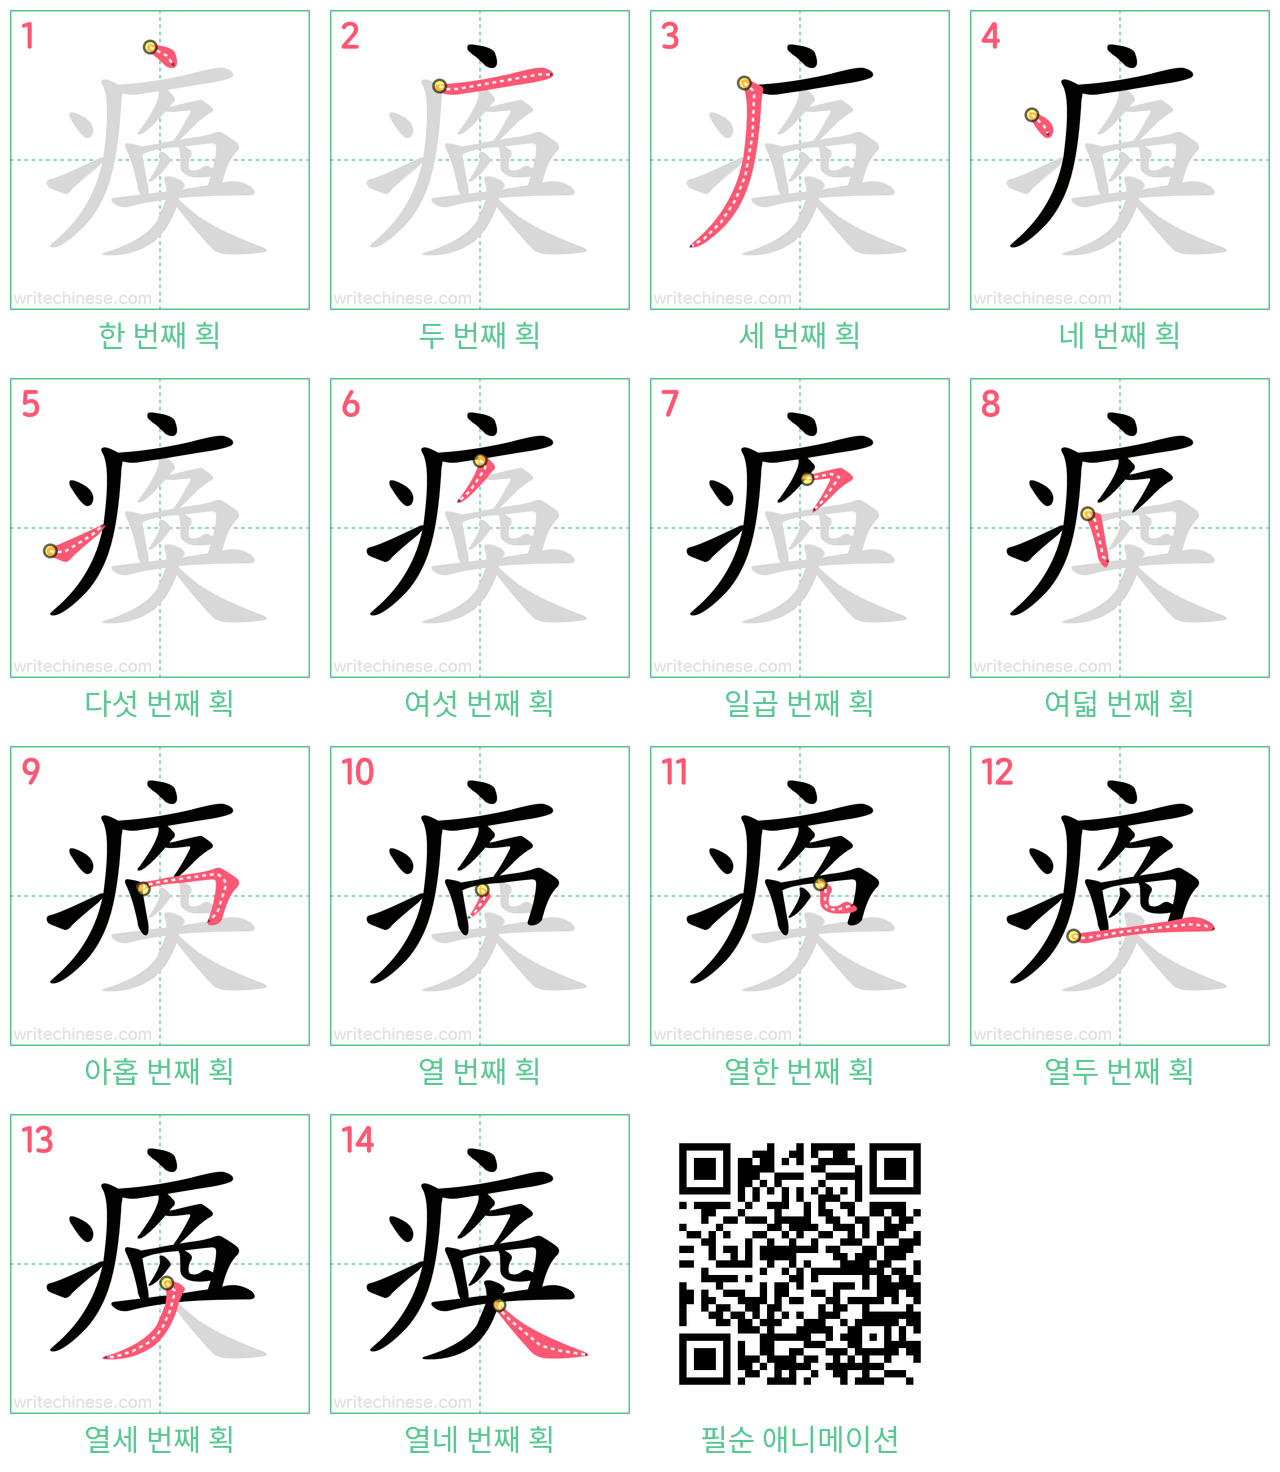 瘓 step-by-step stroke order diagrams